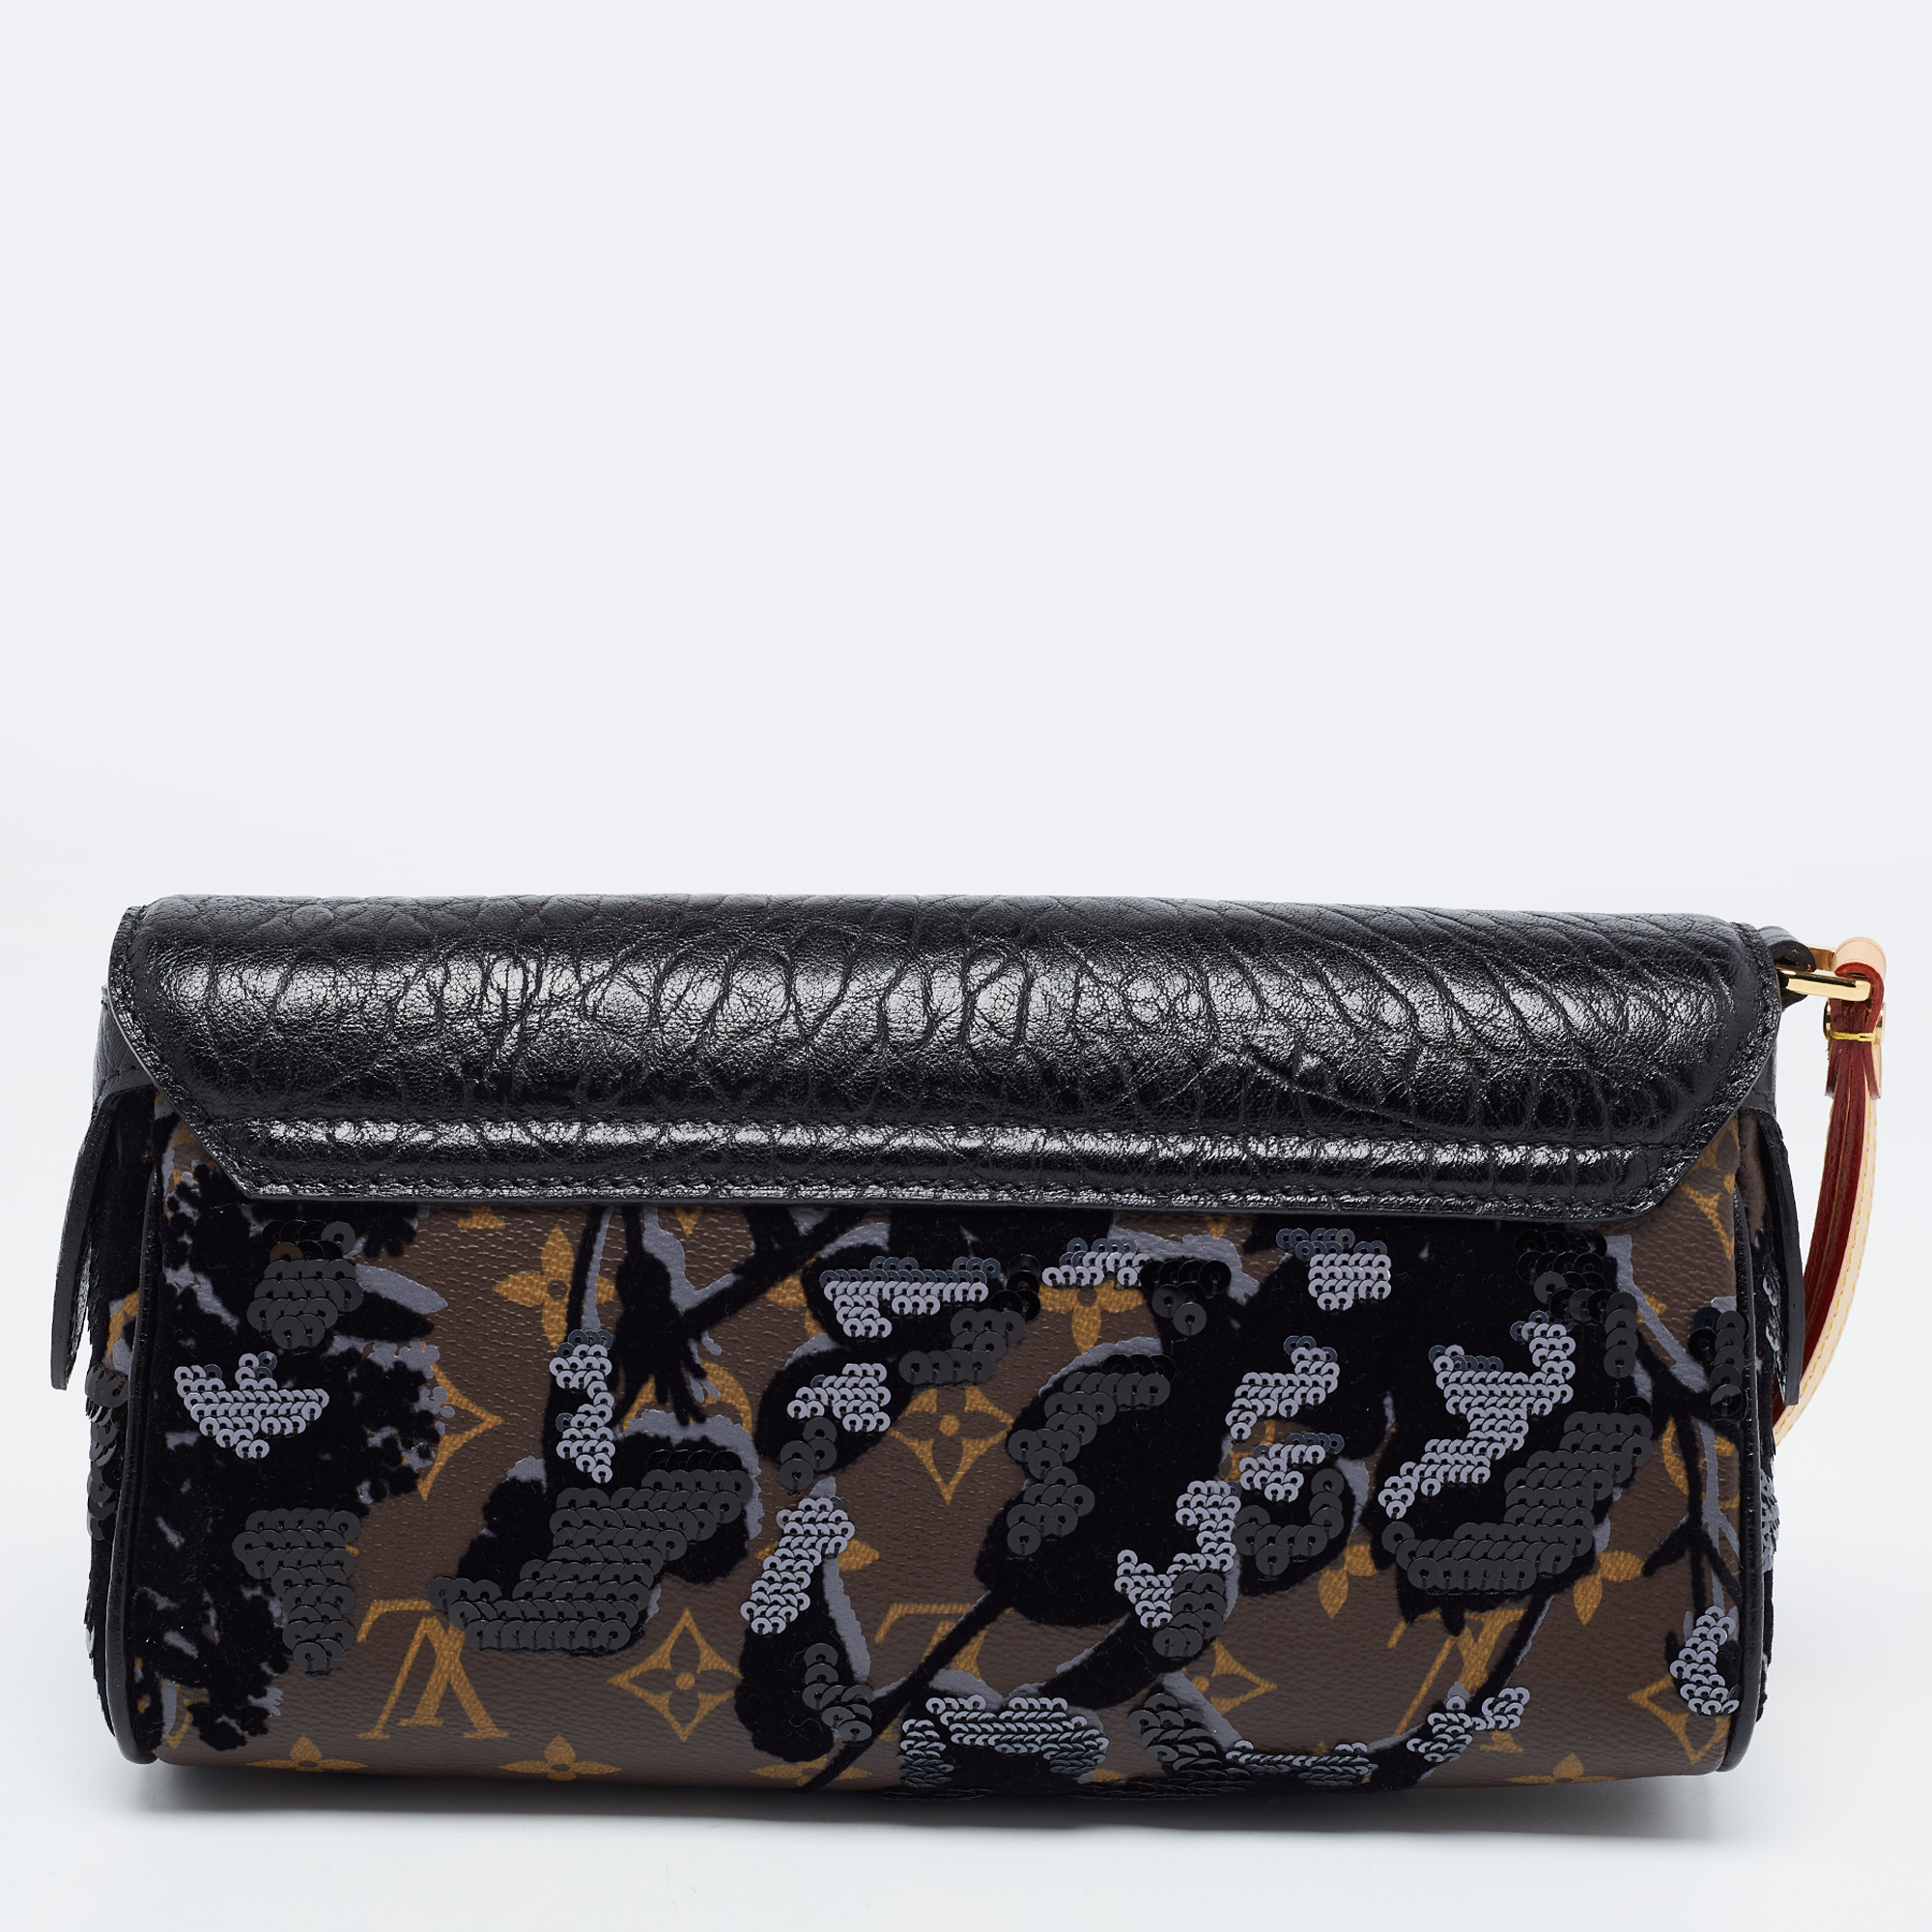 Louis Vuitton Black/Monogram Canvas And Leather Limited Edition Fleur De Jais Manege Clutch